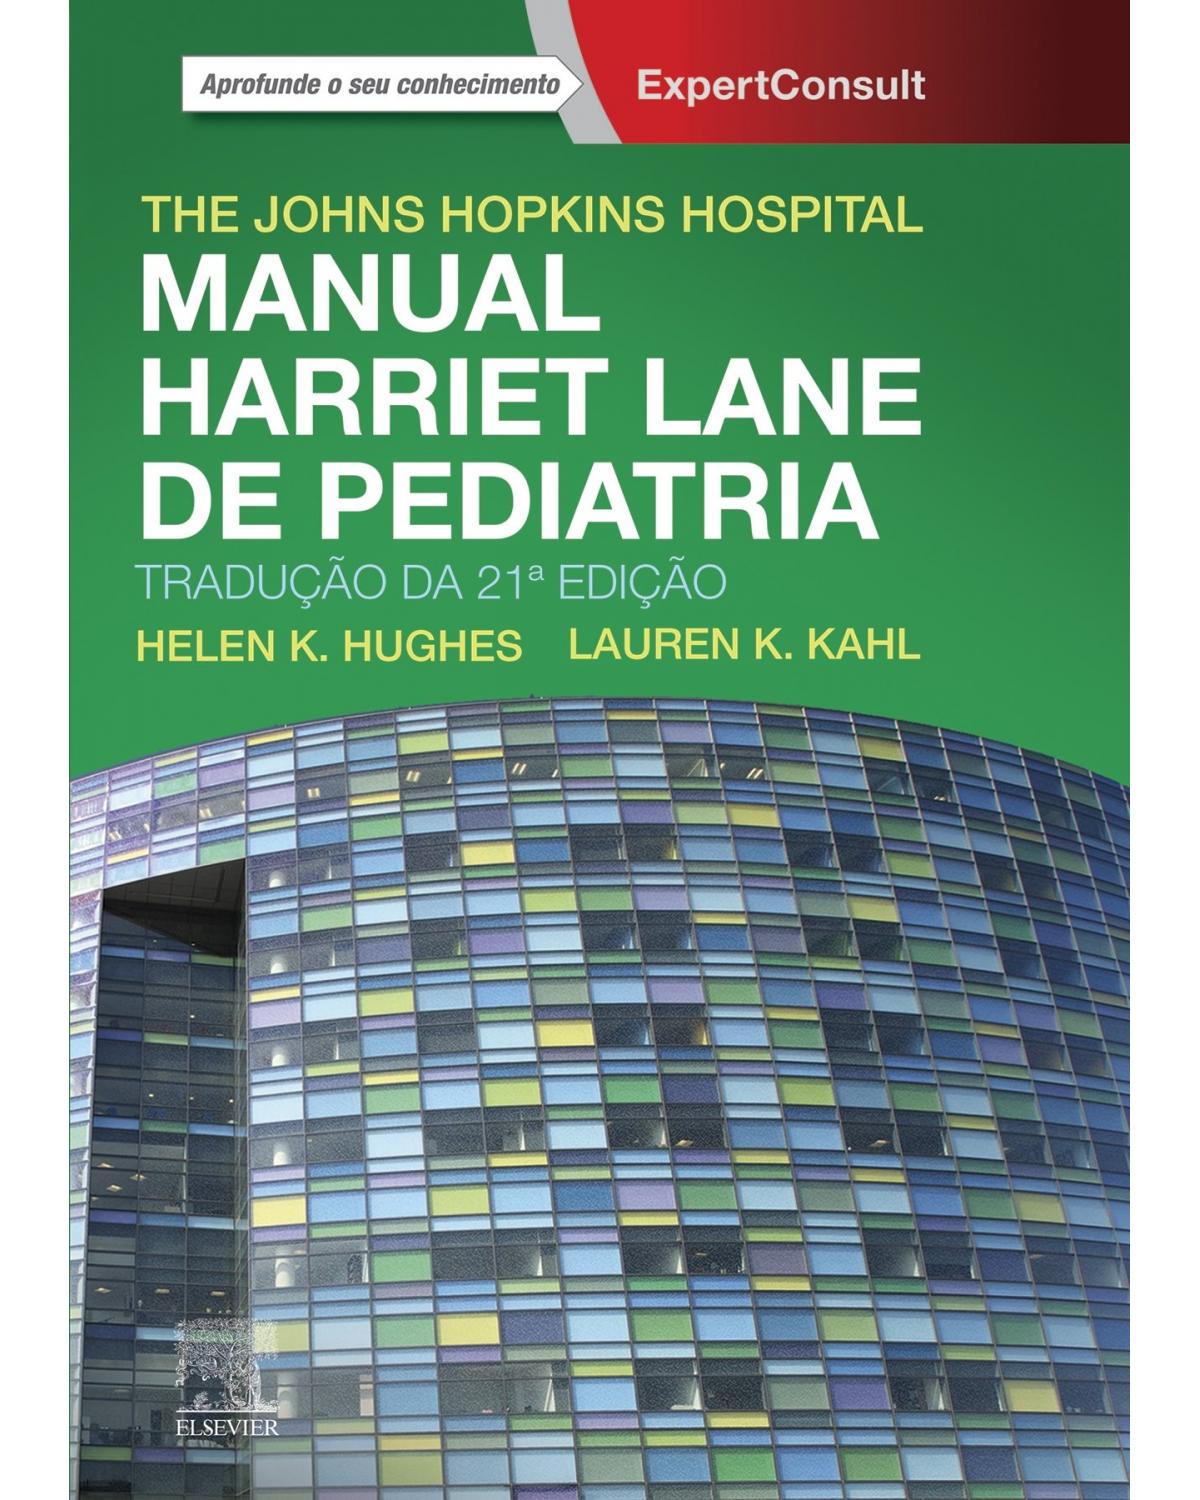 Manual Harriet Lane de pediatria - 21ª Edição | 2019